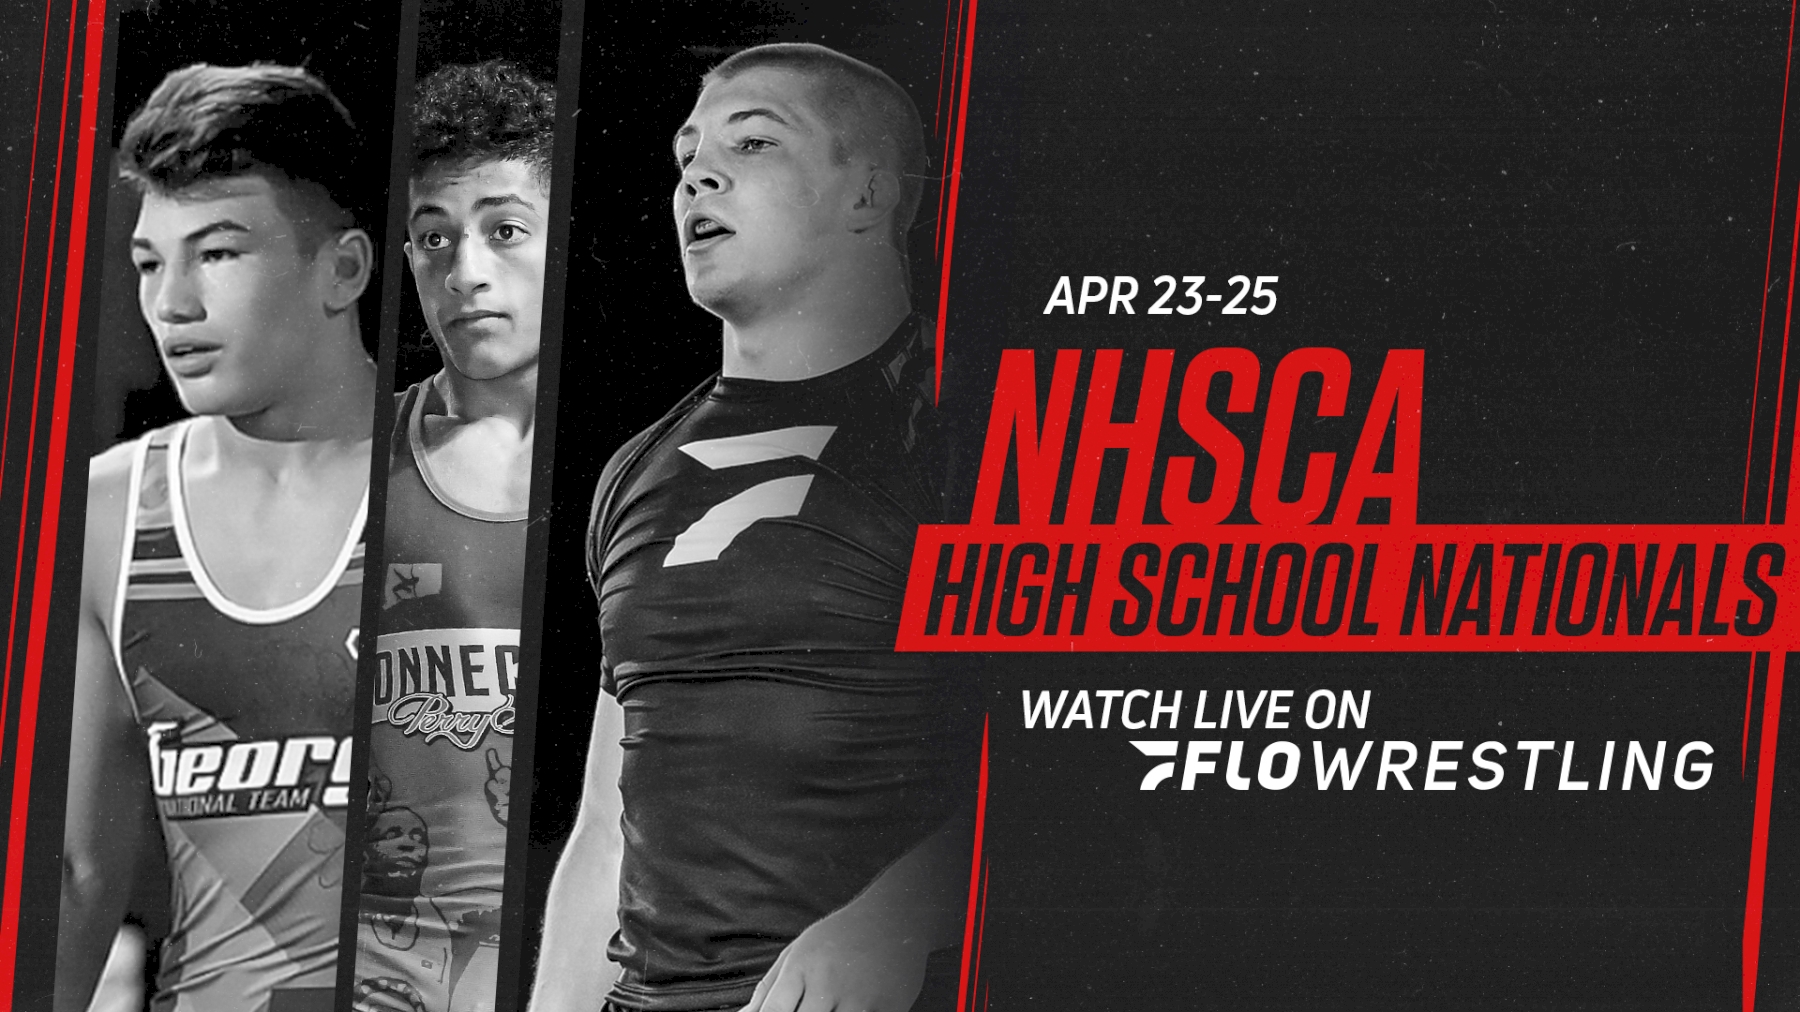 2021 NHSCA High School Nationals Entries FloWrestling